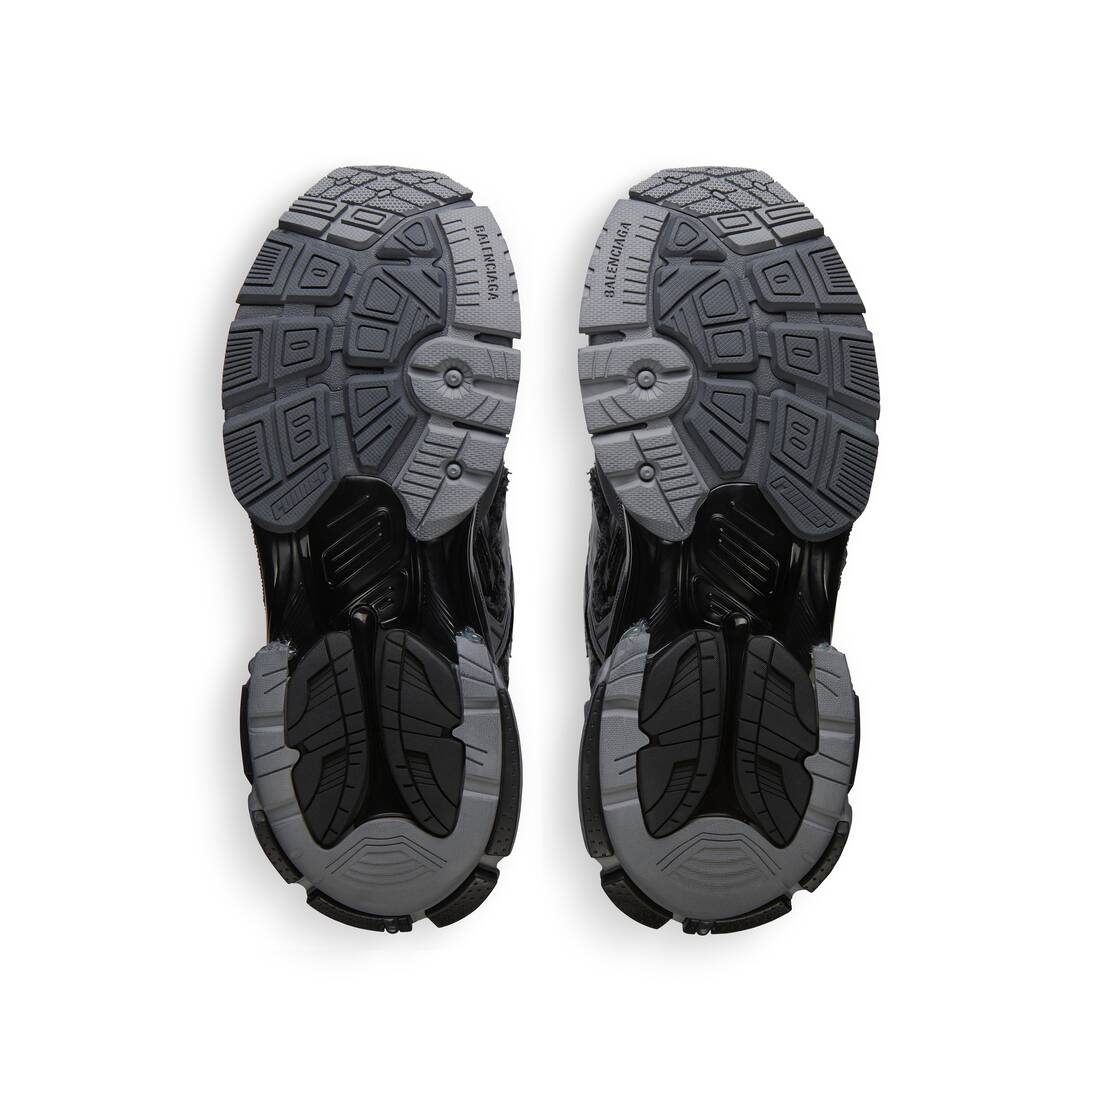 Men's Runner Sneaker in Dark Grey - 7